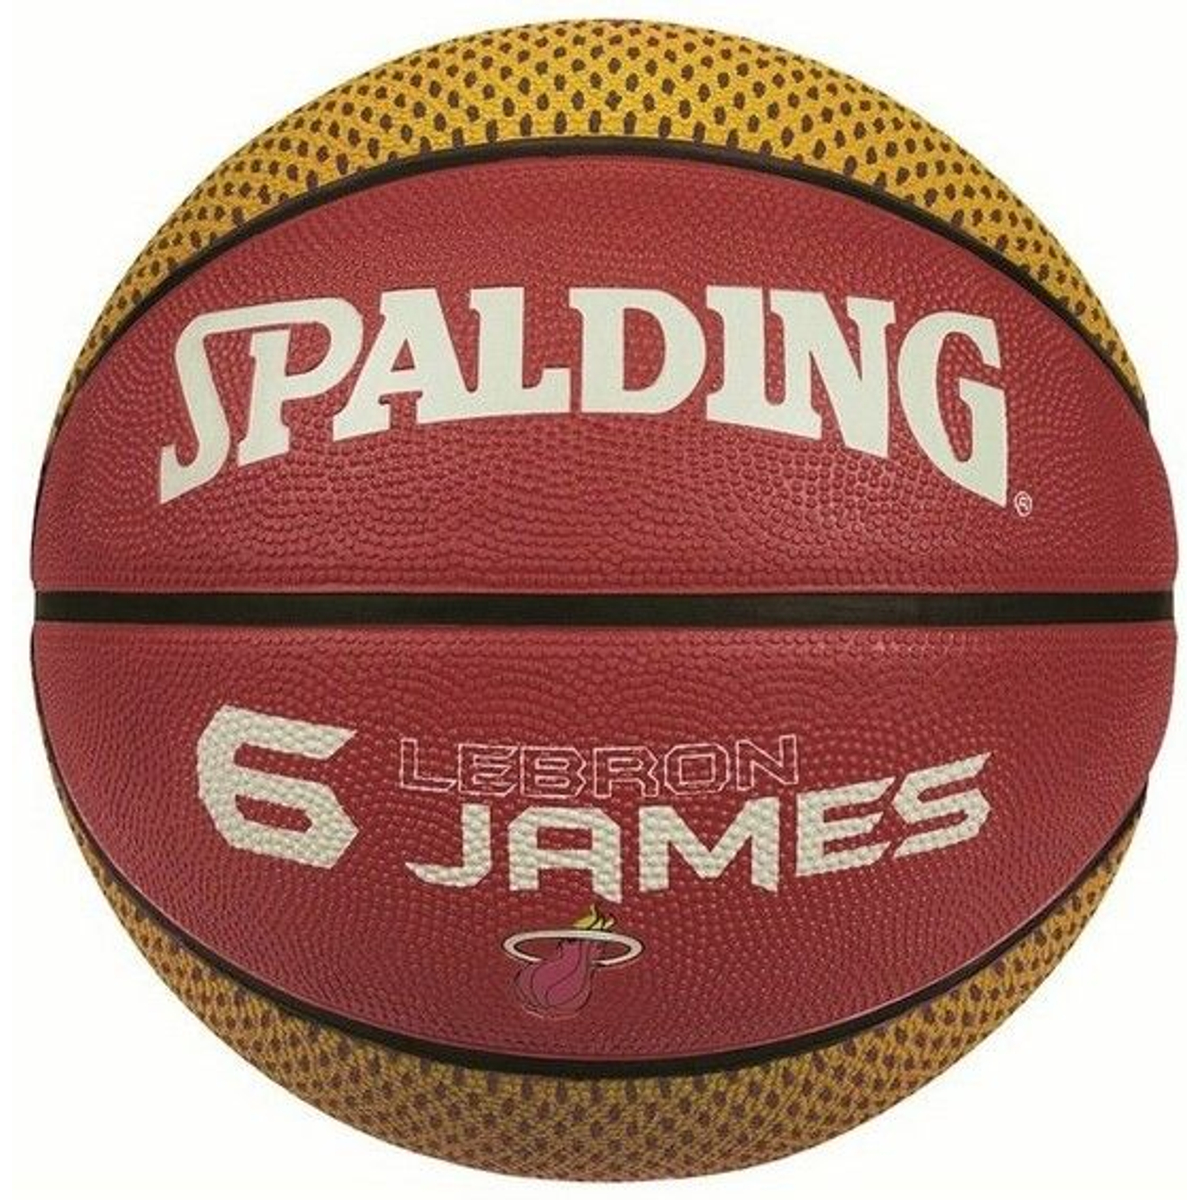 Spalding James Lebron Basketbal